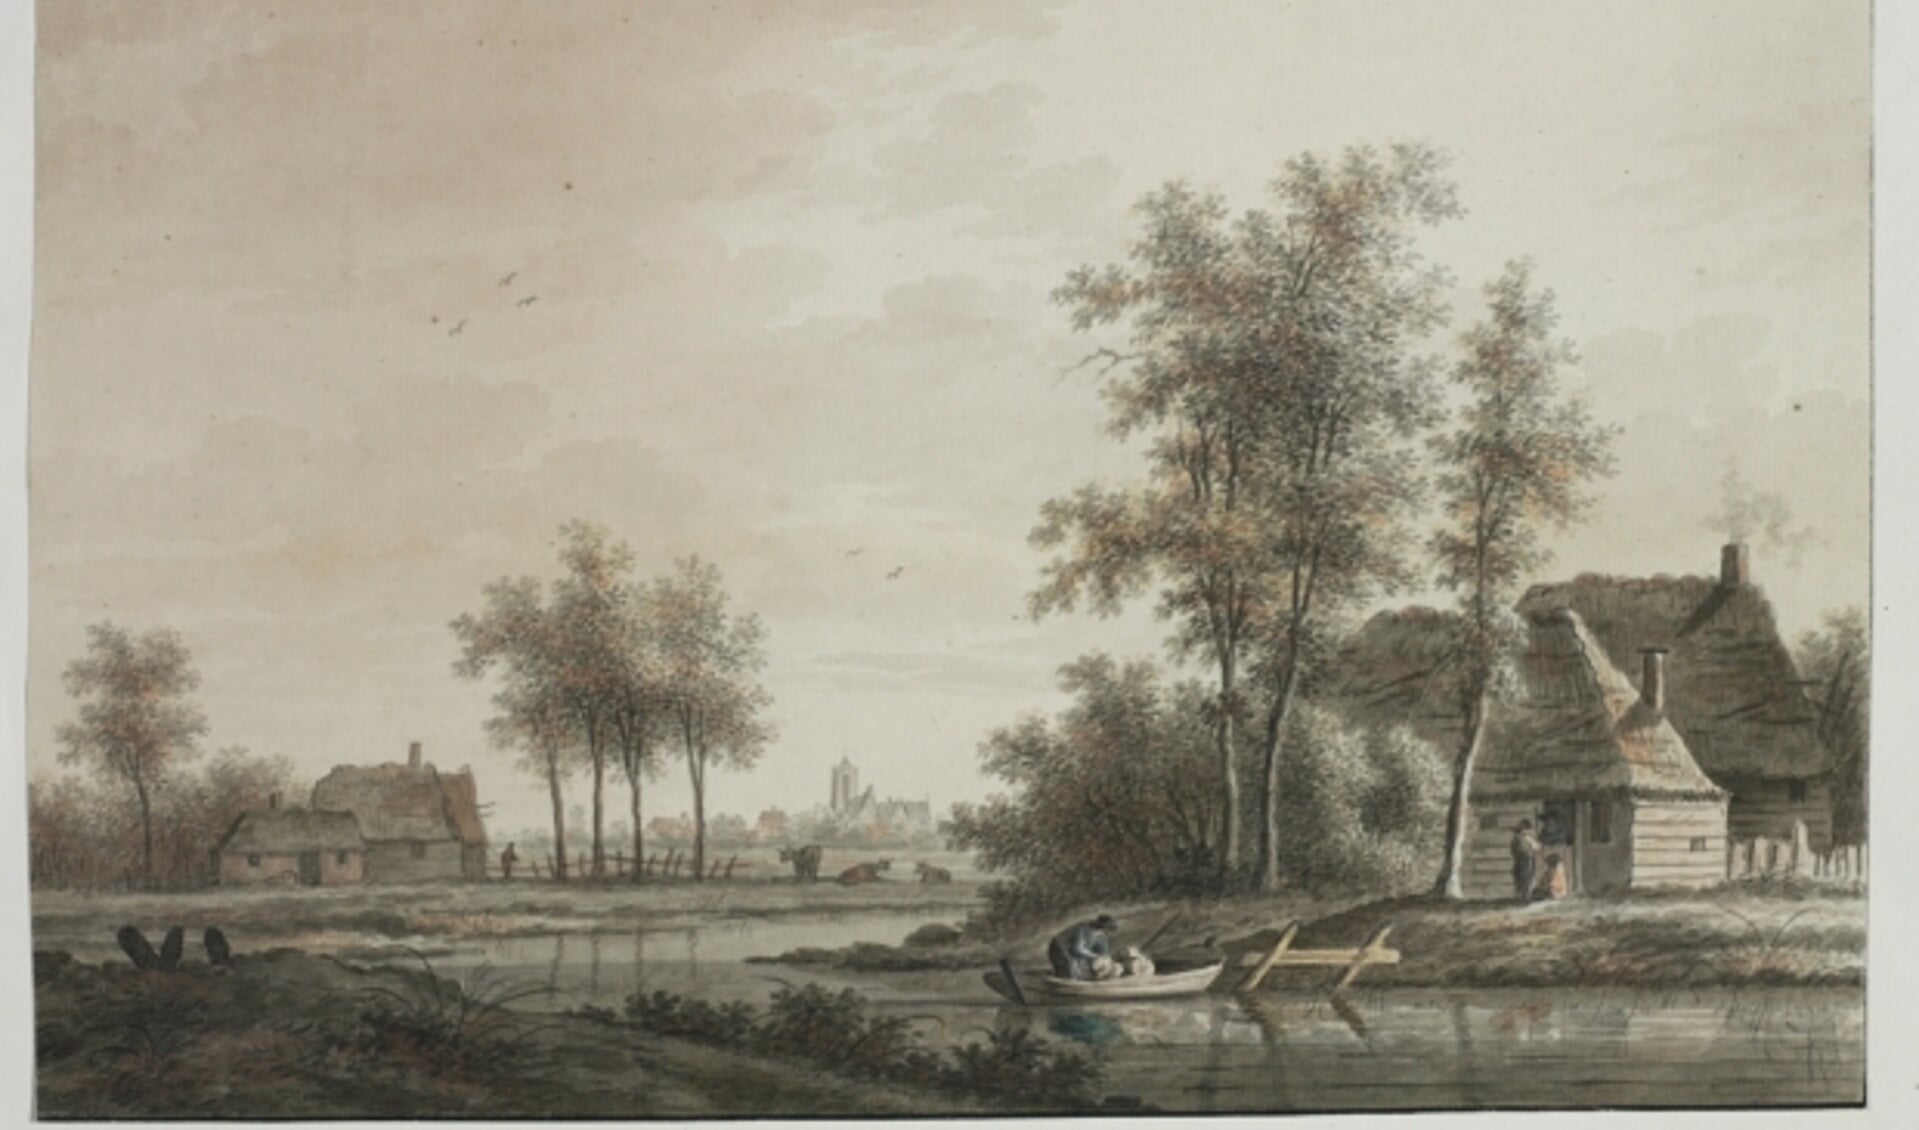 De omgeving van Westbroek rond 1800.